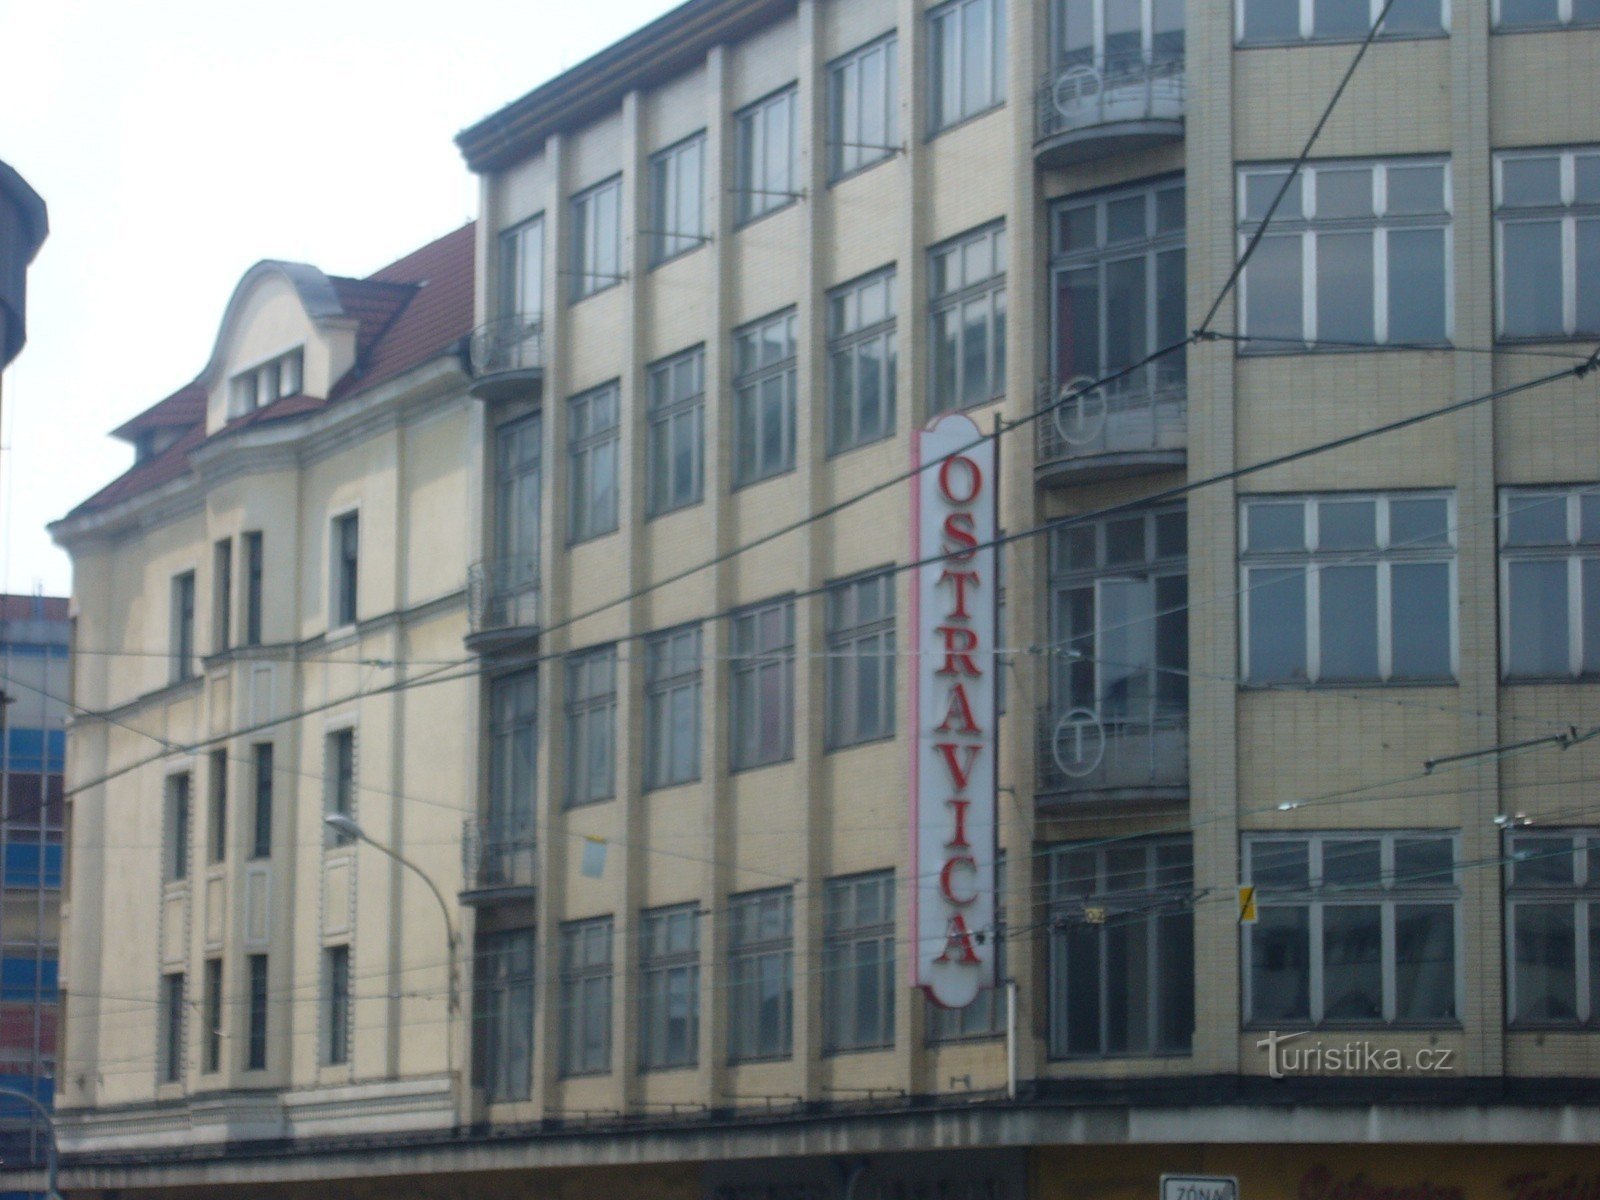 Ostrava - Maison de commerce Textilia - Ostravica